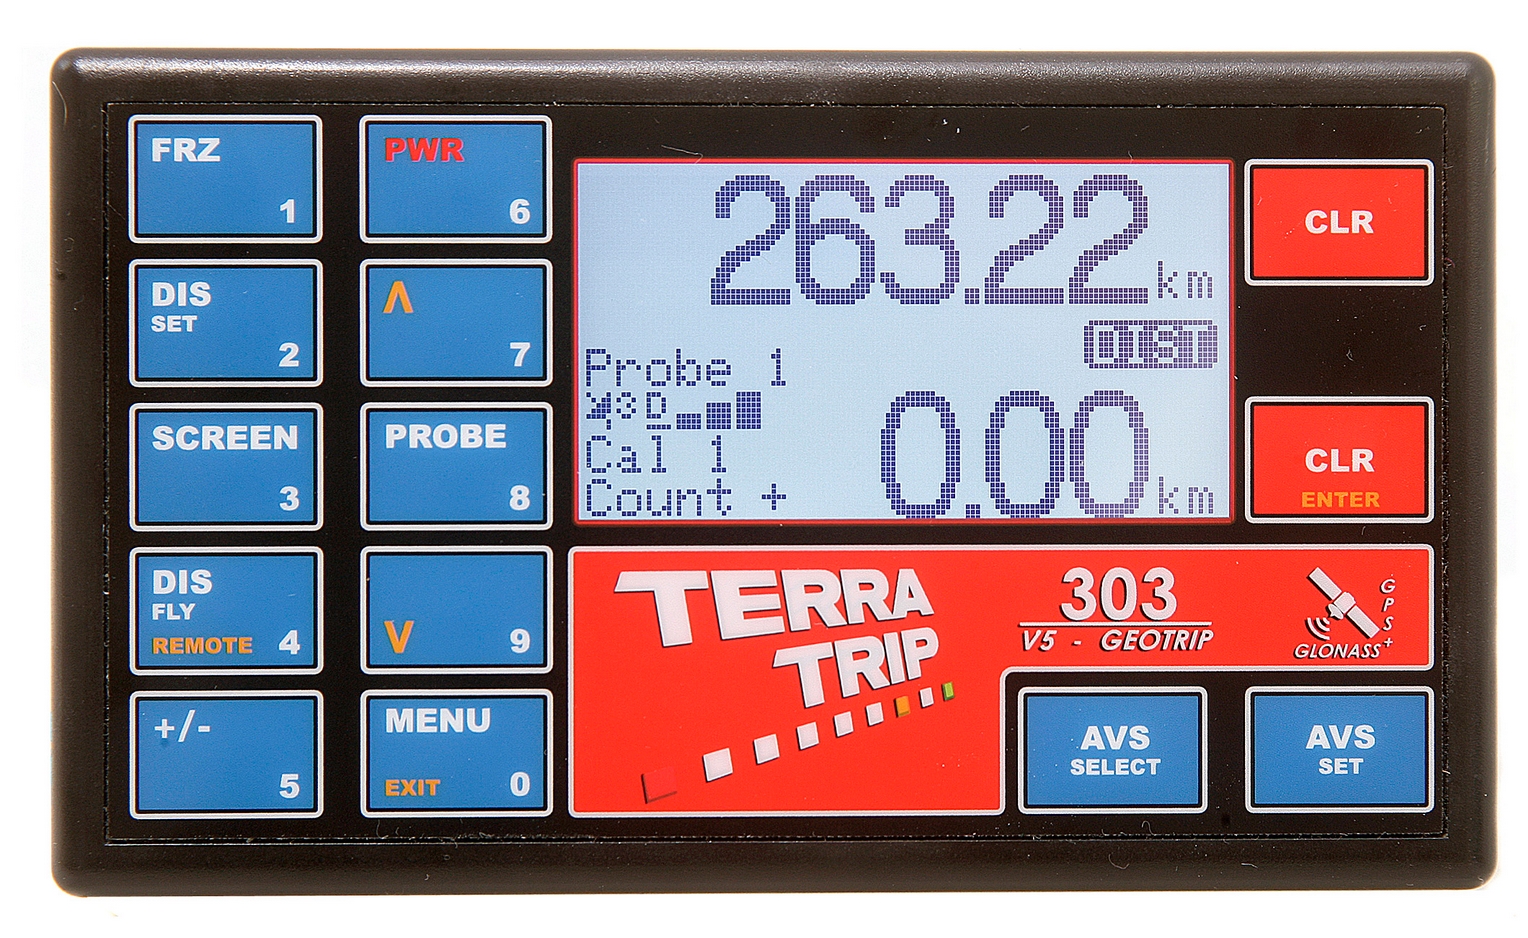 Taktgeber induktiv Terratrip 3,5mm passend für alle Terratrip Rallycomputer 